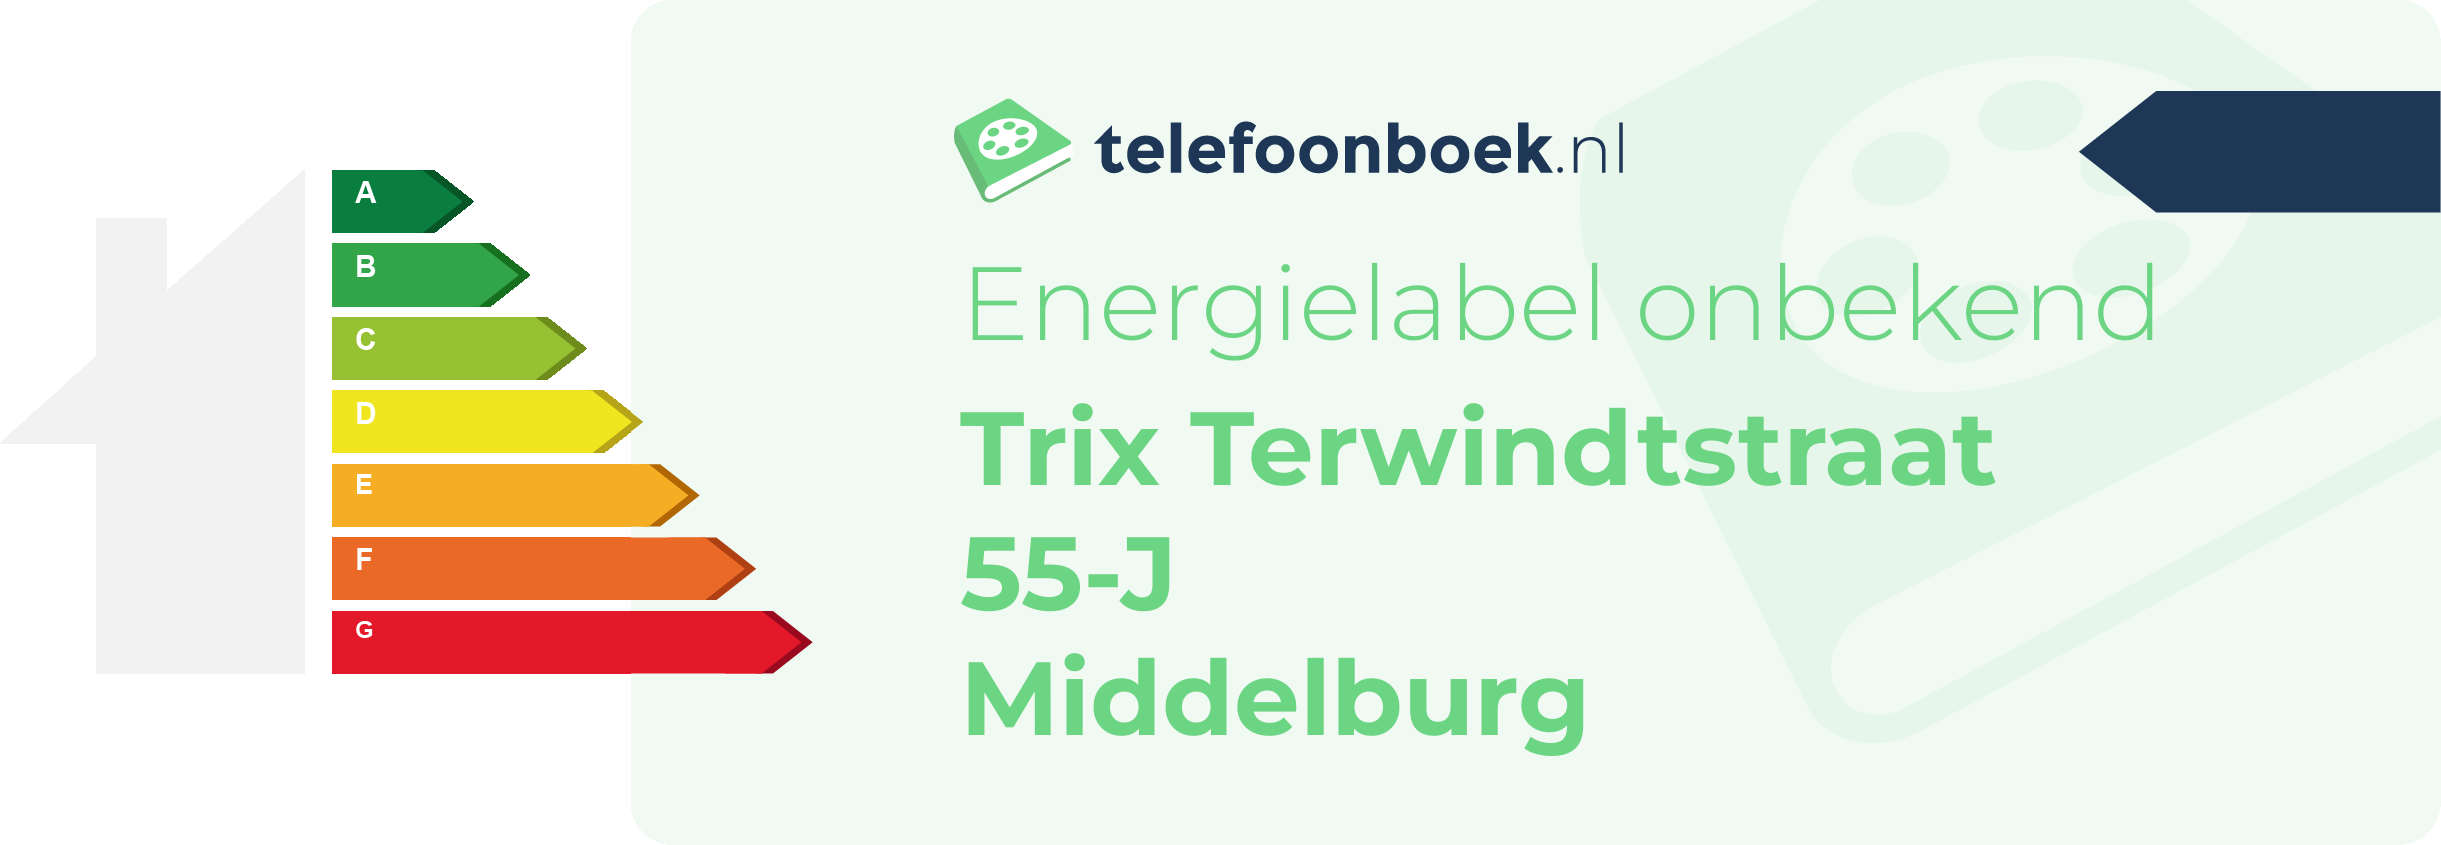 Energielabel Trix Terwindtstraat 55-J Middelburg